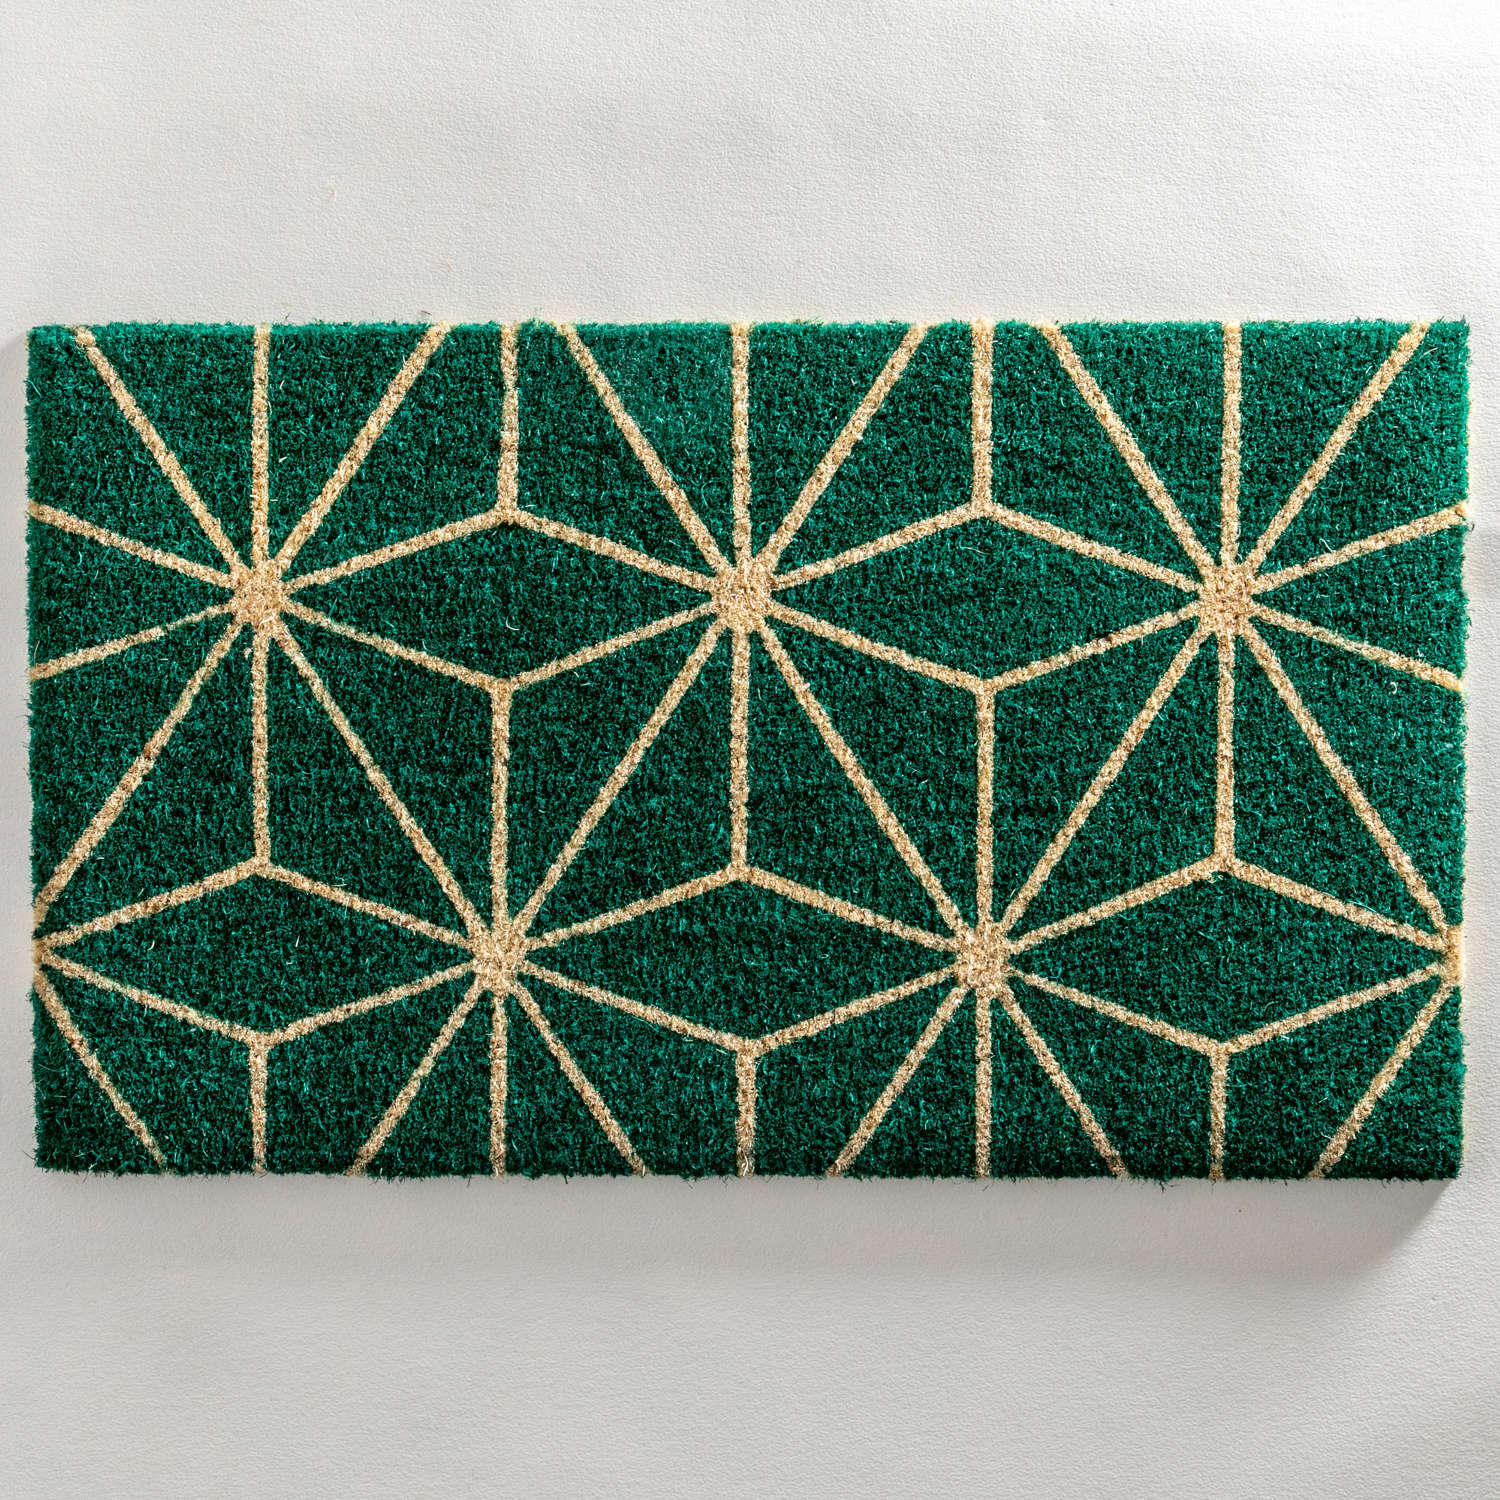 Green geo design standard size doormat